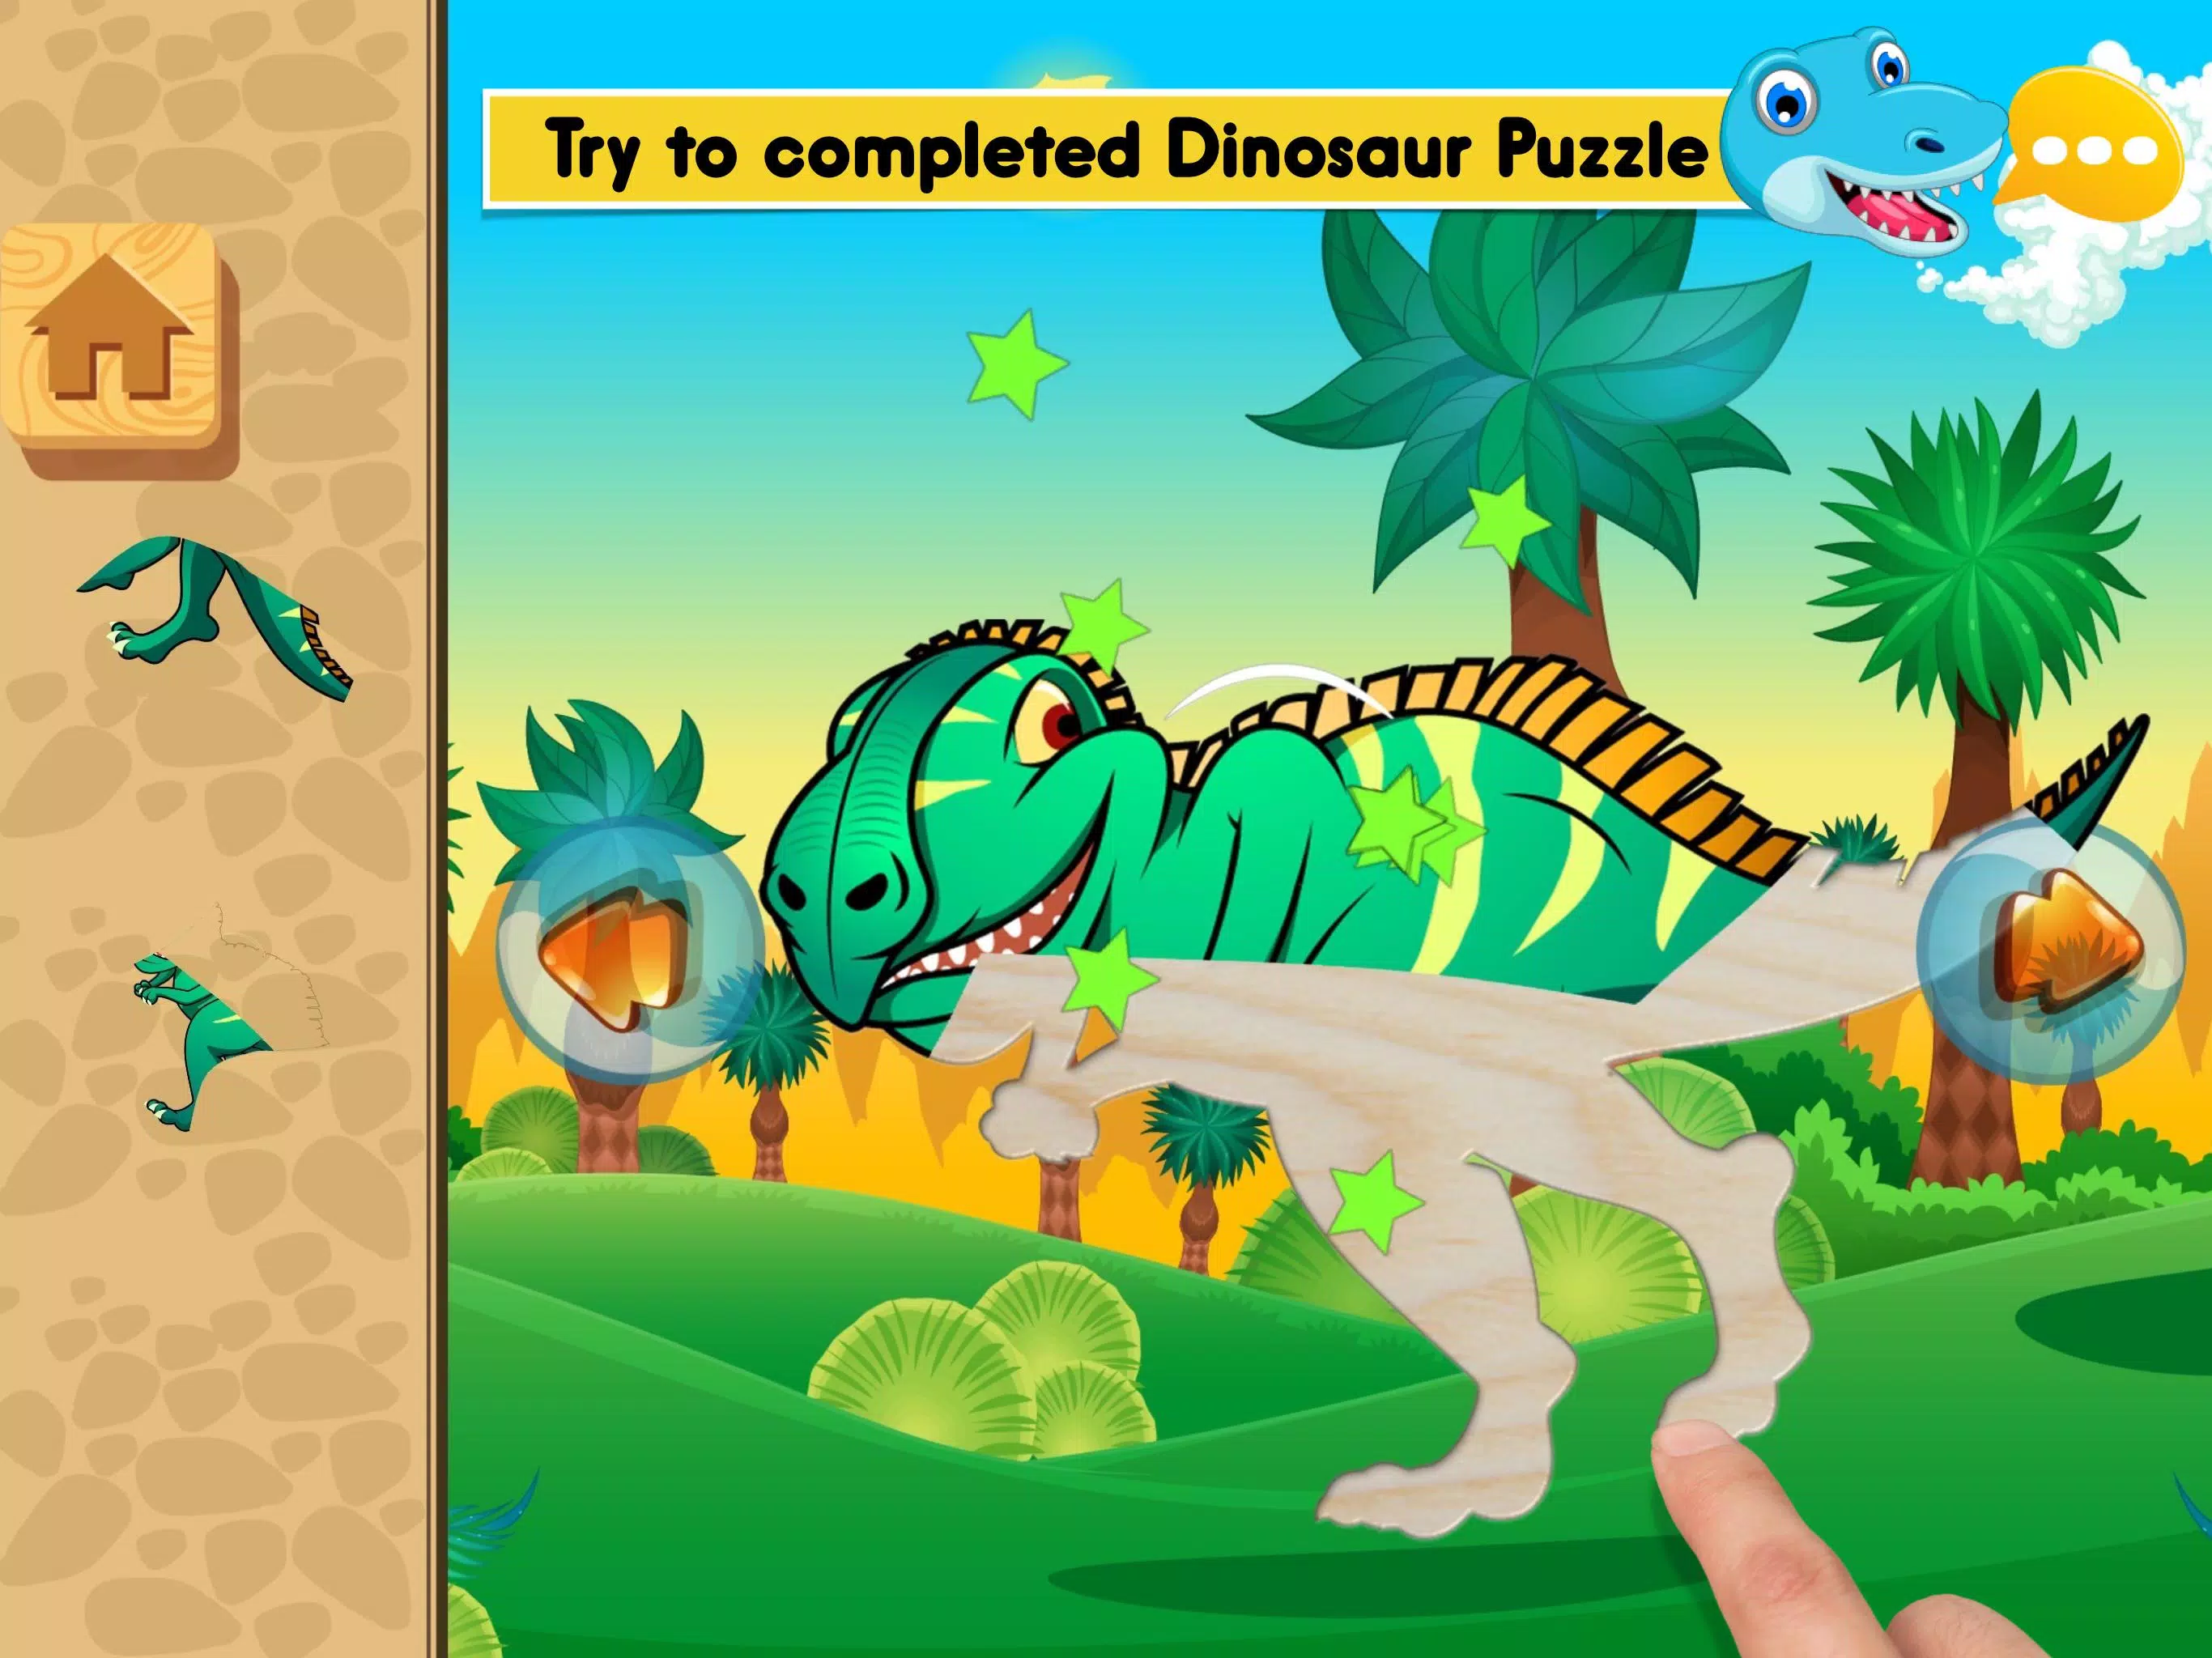 Download do APK de Sons de dinossauro jogos educativos para crianças para  Android